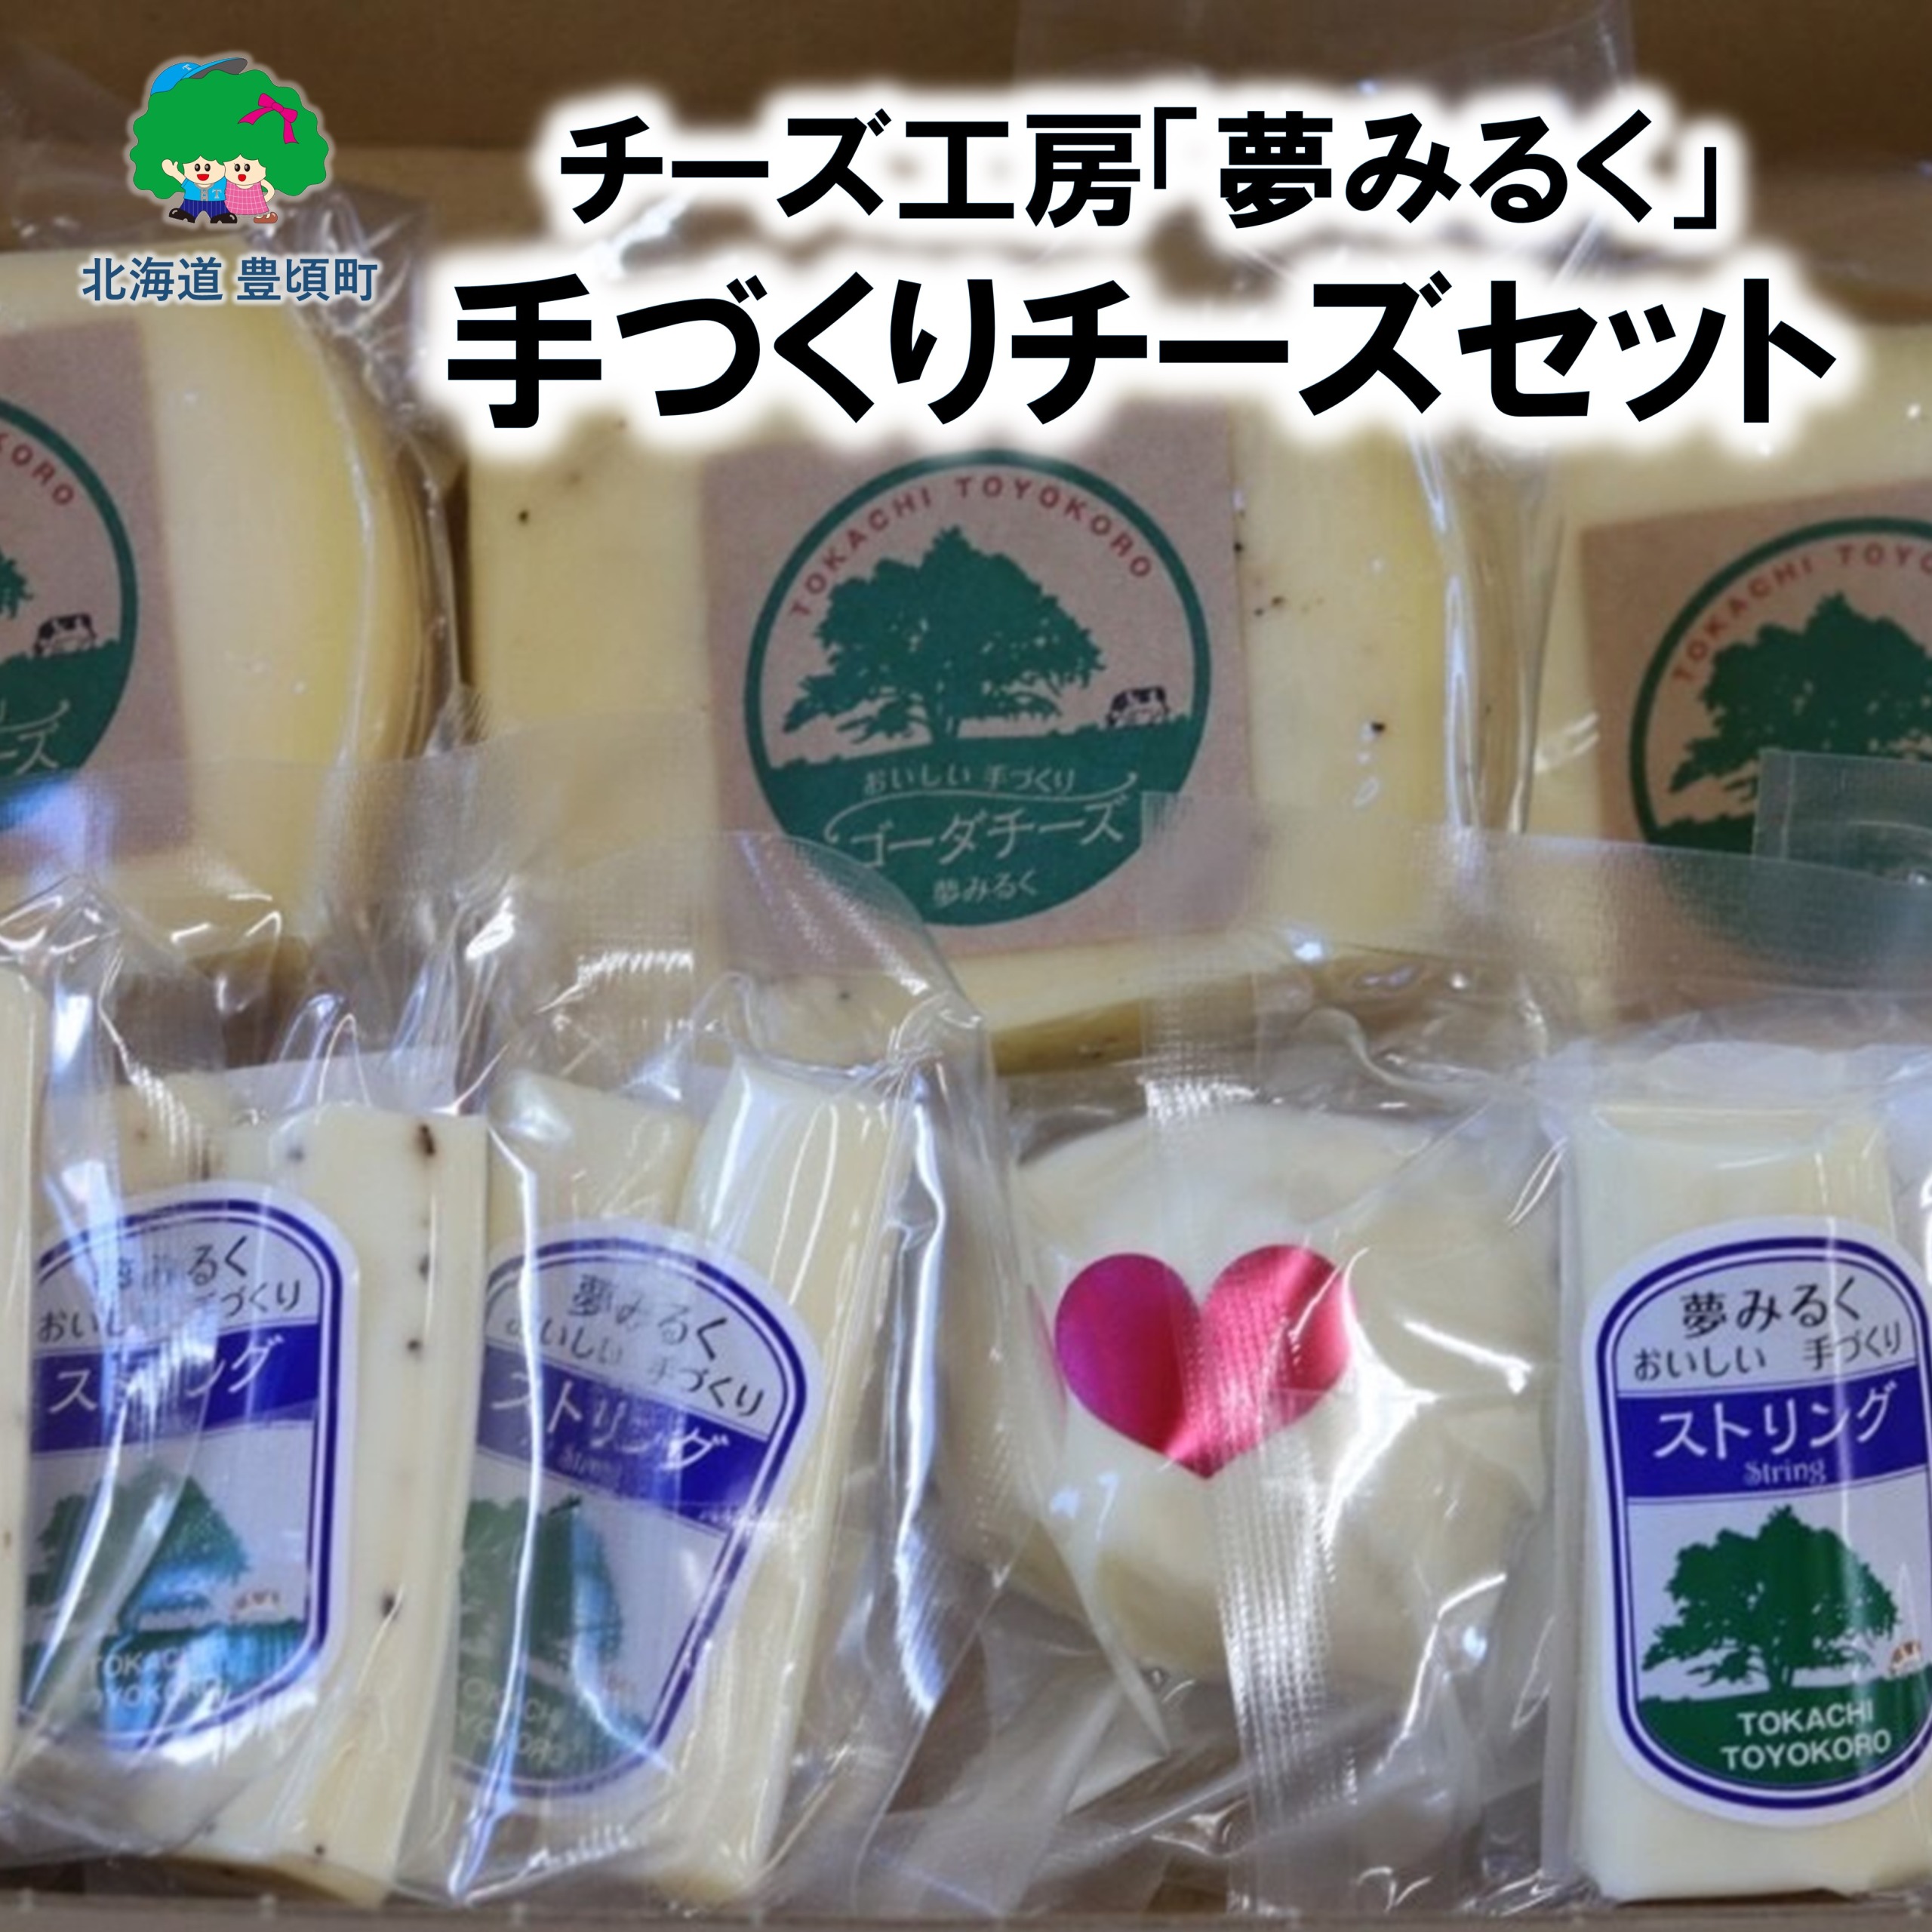 「夢みるく」手作りチーズセット[12月から4月まで!各月20セット限定]